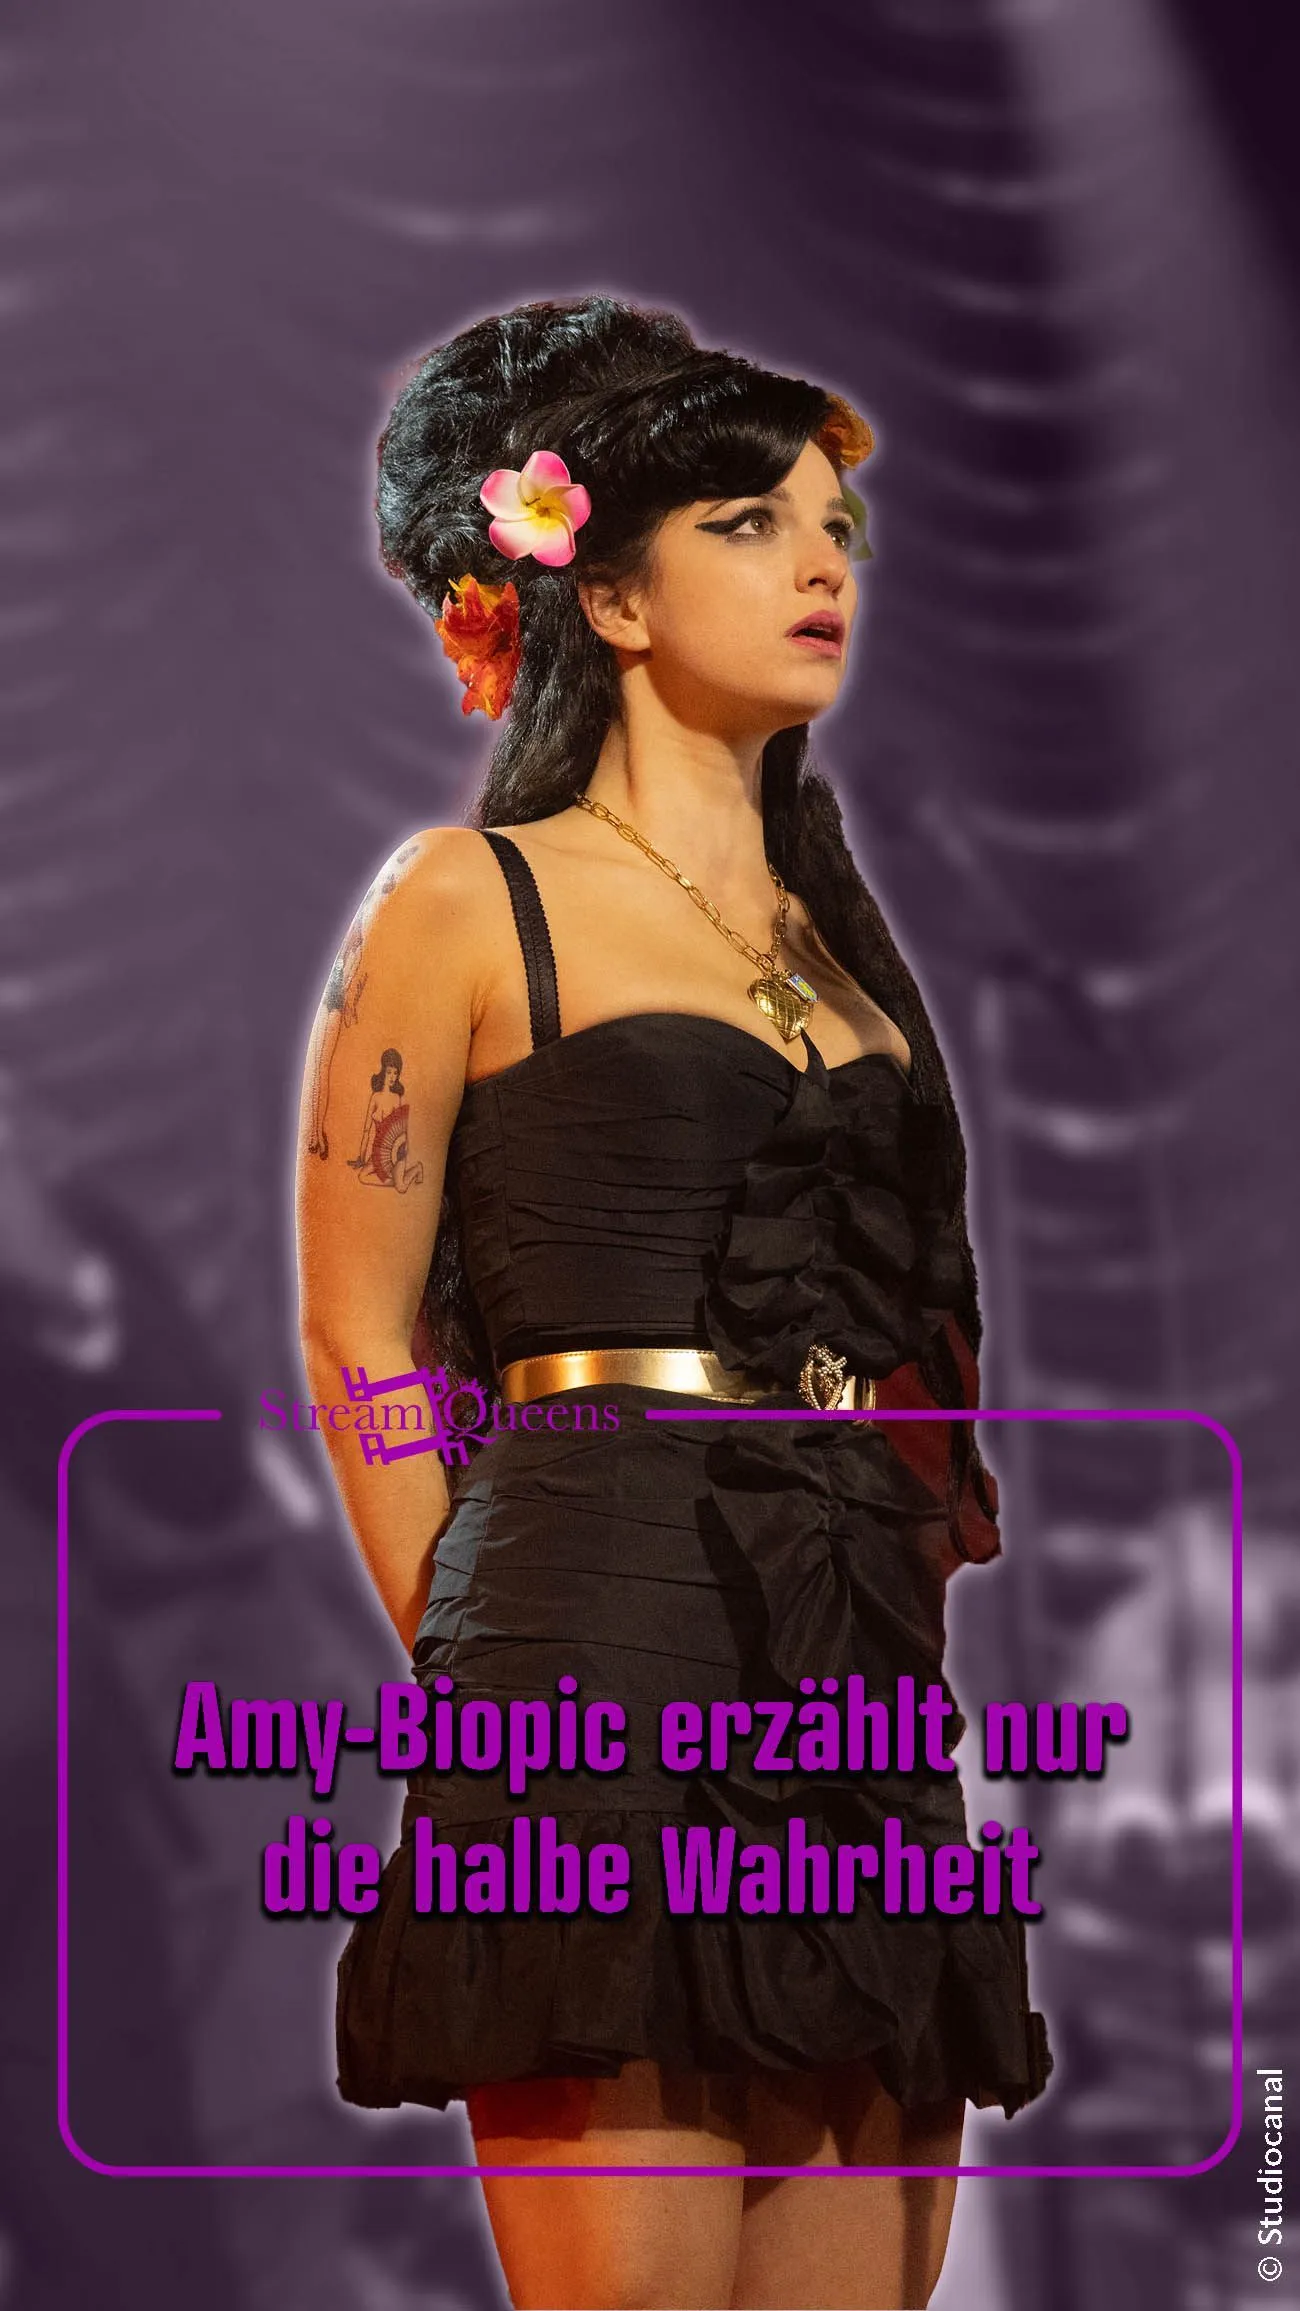 Volver a Negro: ¿El biopic de Amy Winehouse cuenta realmente la verdad?